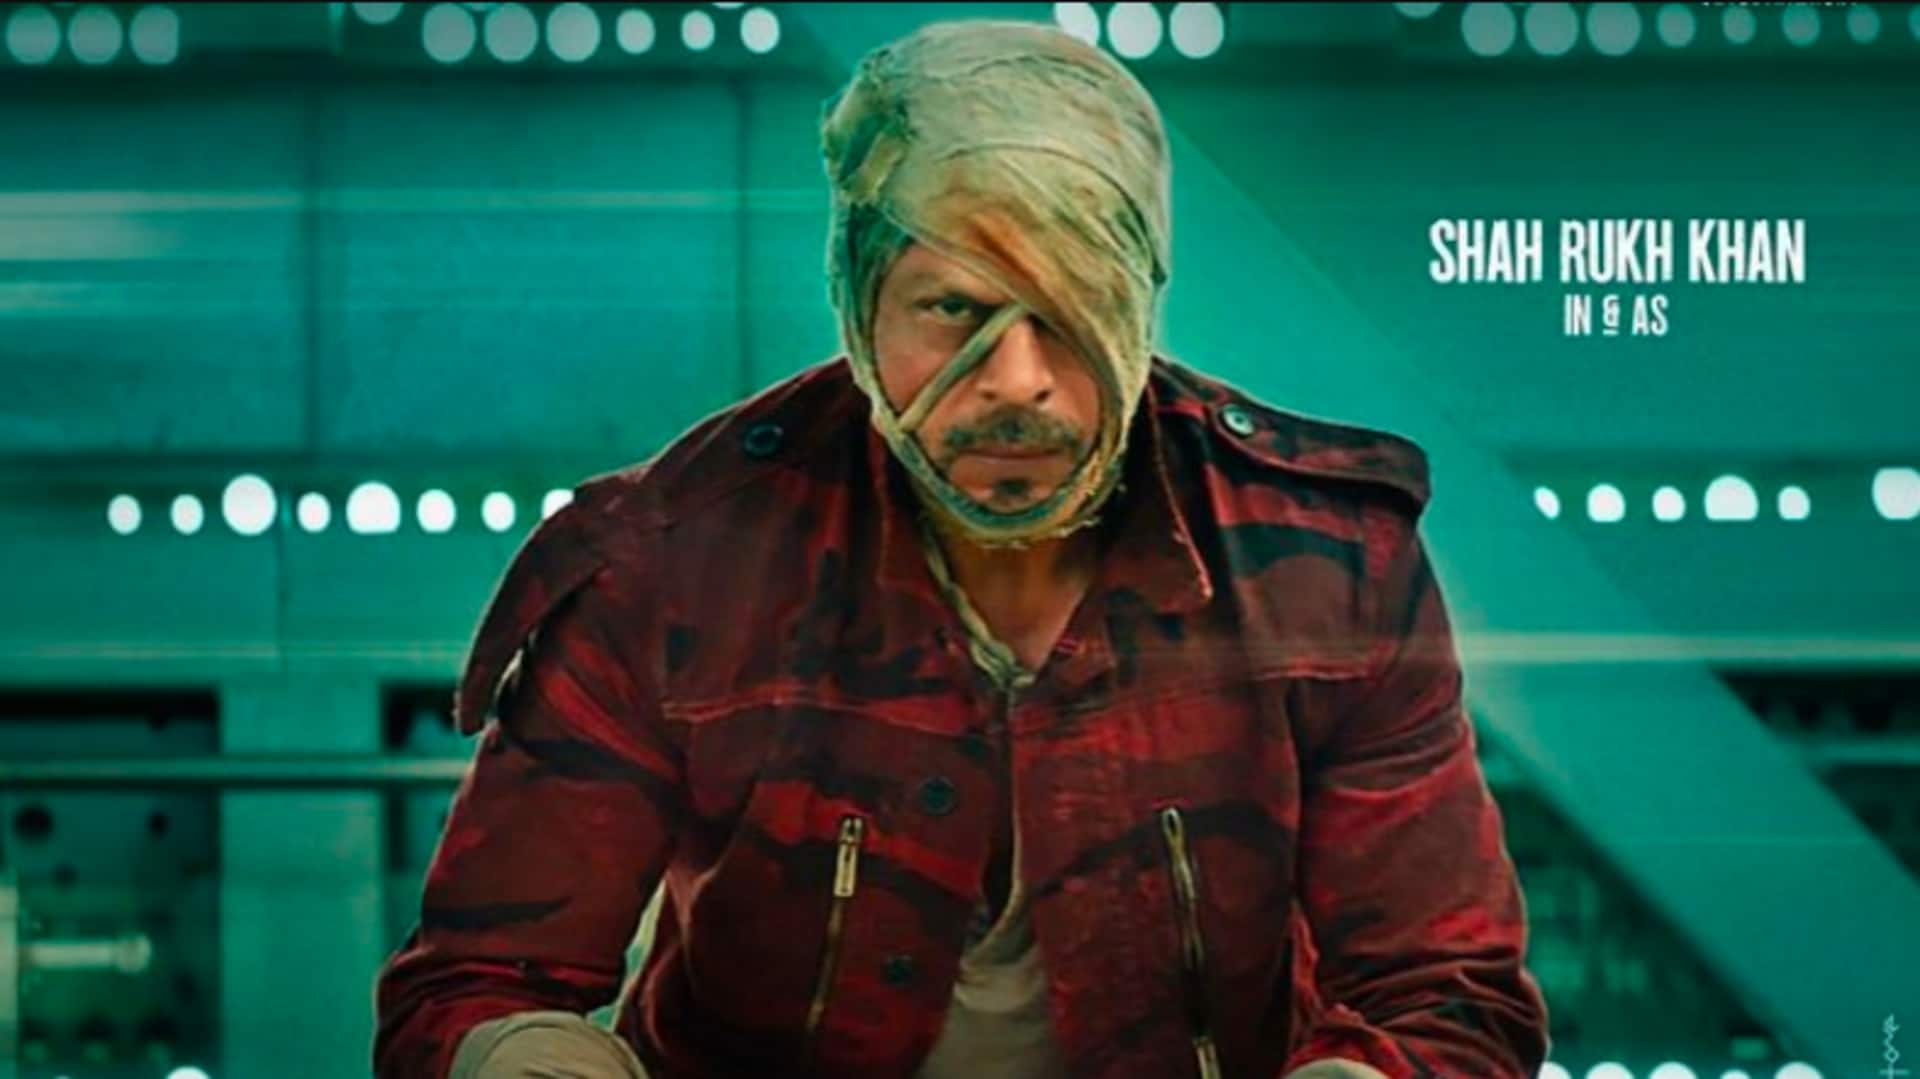 शाहरुख खान की 'जवान' 2 जून को ही होगी रिलीज, नहीं बदली गई निर्धारित तारीख 